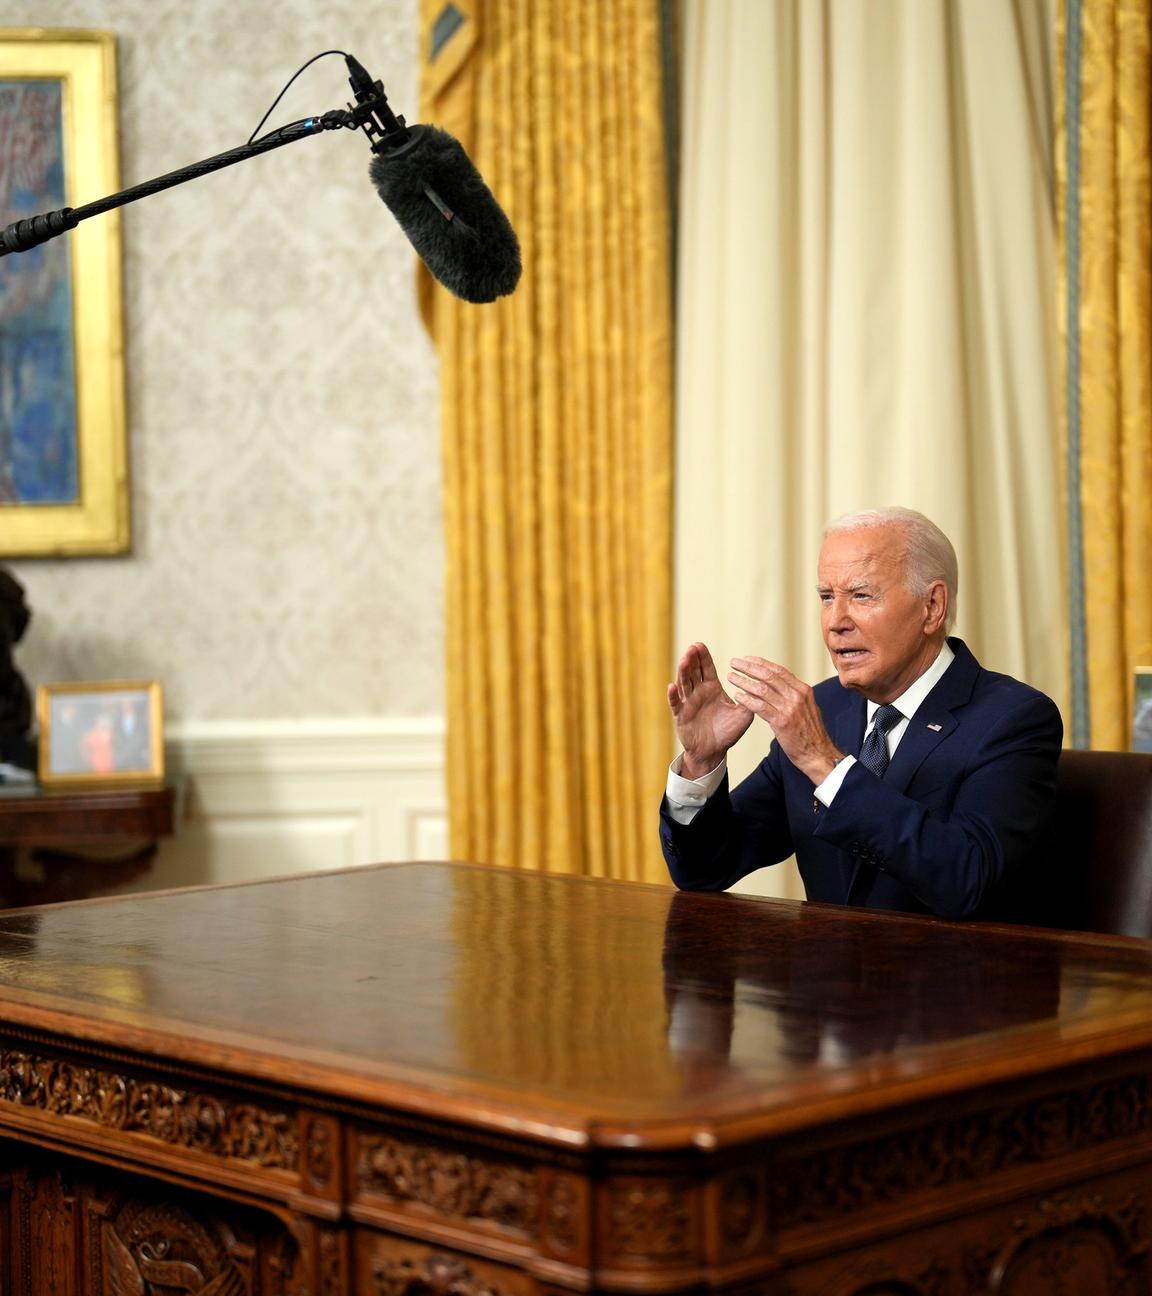 Joe Biden sitzt im Oval Office hinter seinem Schreibtisch und spricht fokussiert in Richtung der Kameras. Ein Mikrophonständer ist neben dem Schreibtisch zu sehen.